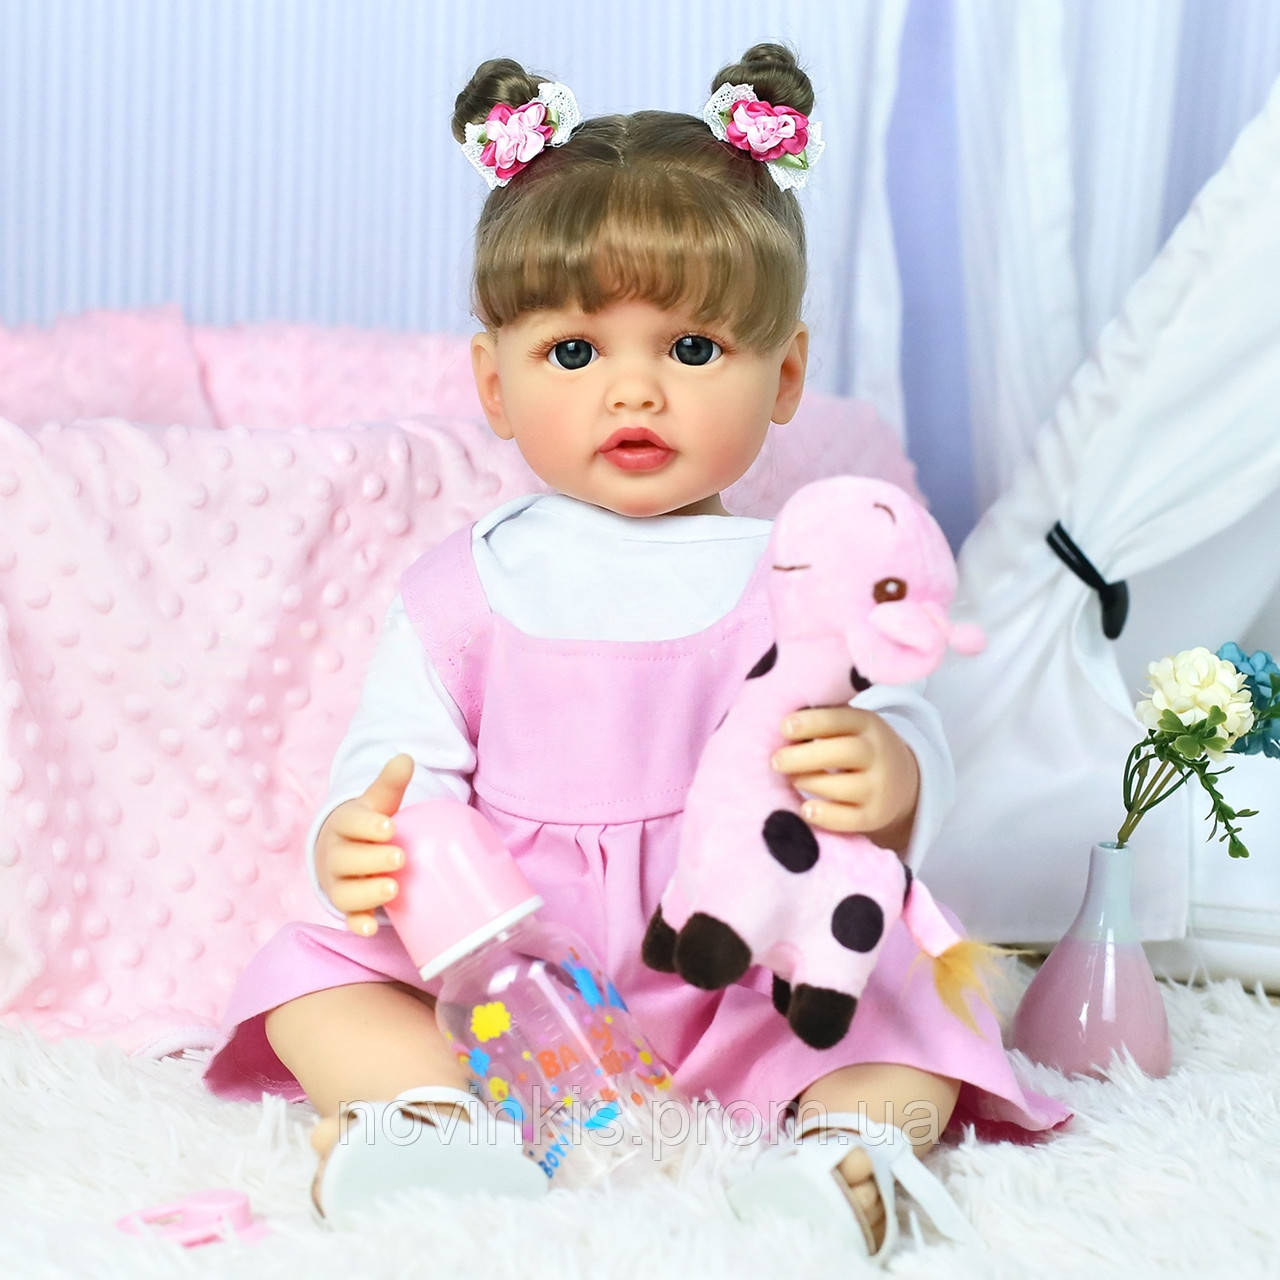 Лялька Реборн (Reborn) 55 см вініл-силіконова Ангеліна в наборі з соскою, пляшкою та іграшкою Можна купати